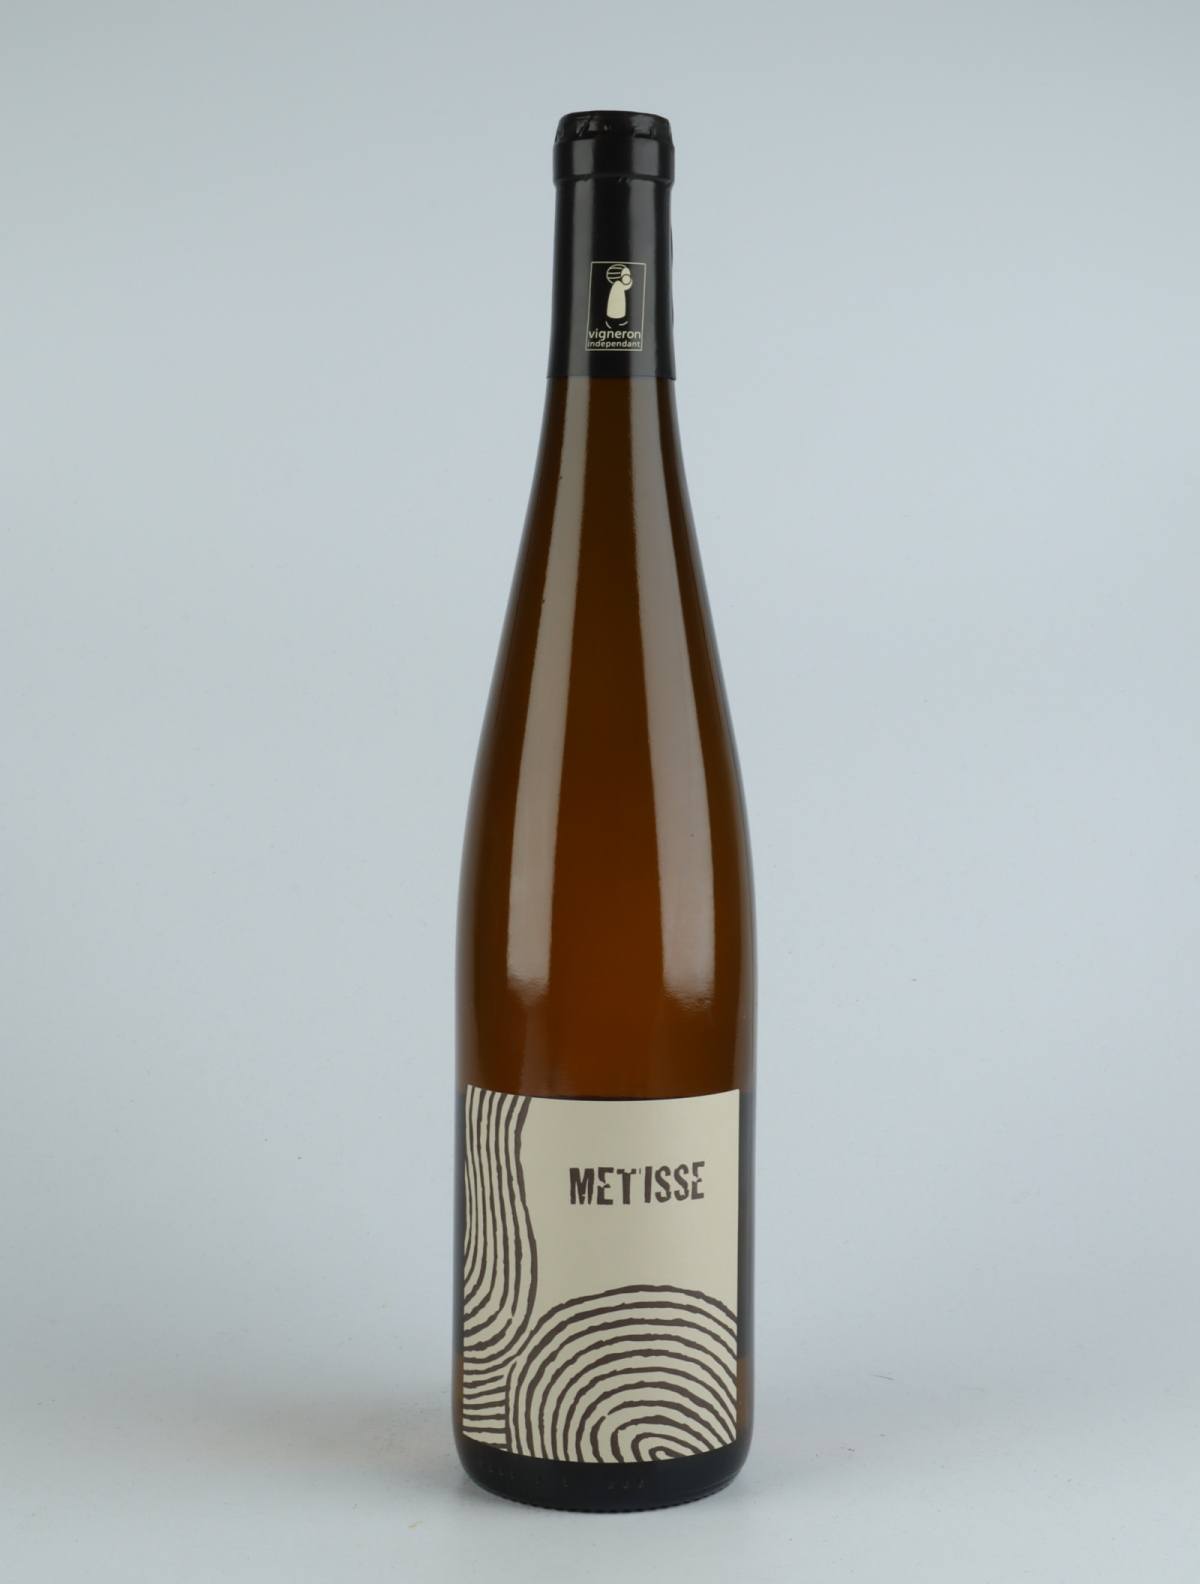 En flaske 2020 Métisse Orange vin fra Ruhlmann Dirringer, Alsace i Frankrig